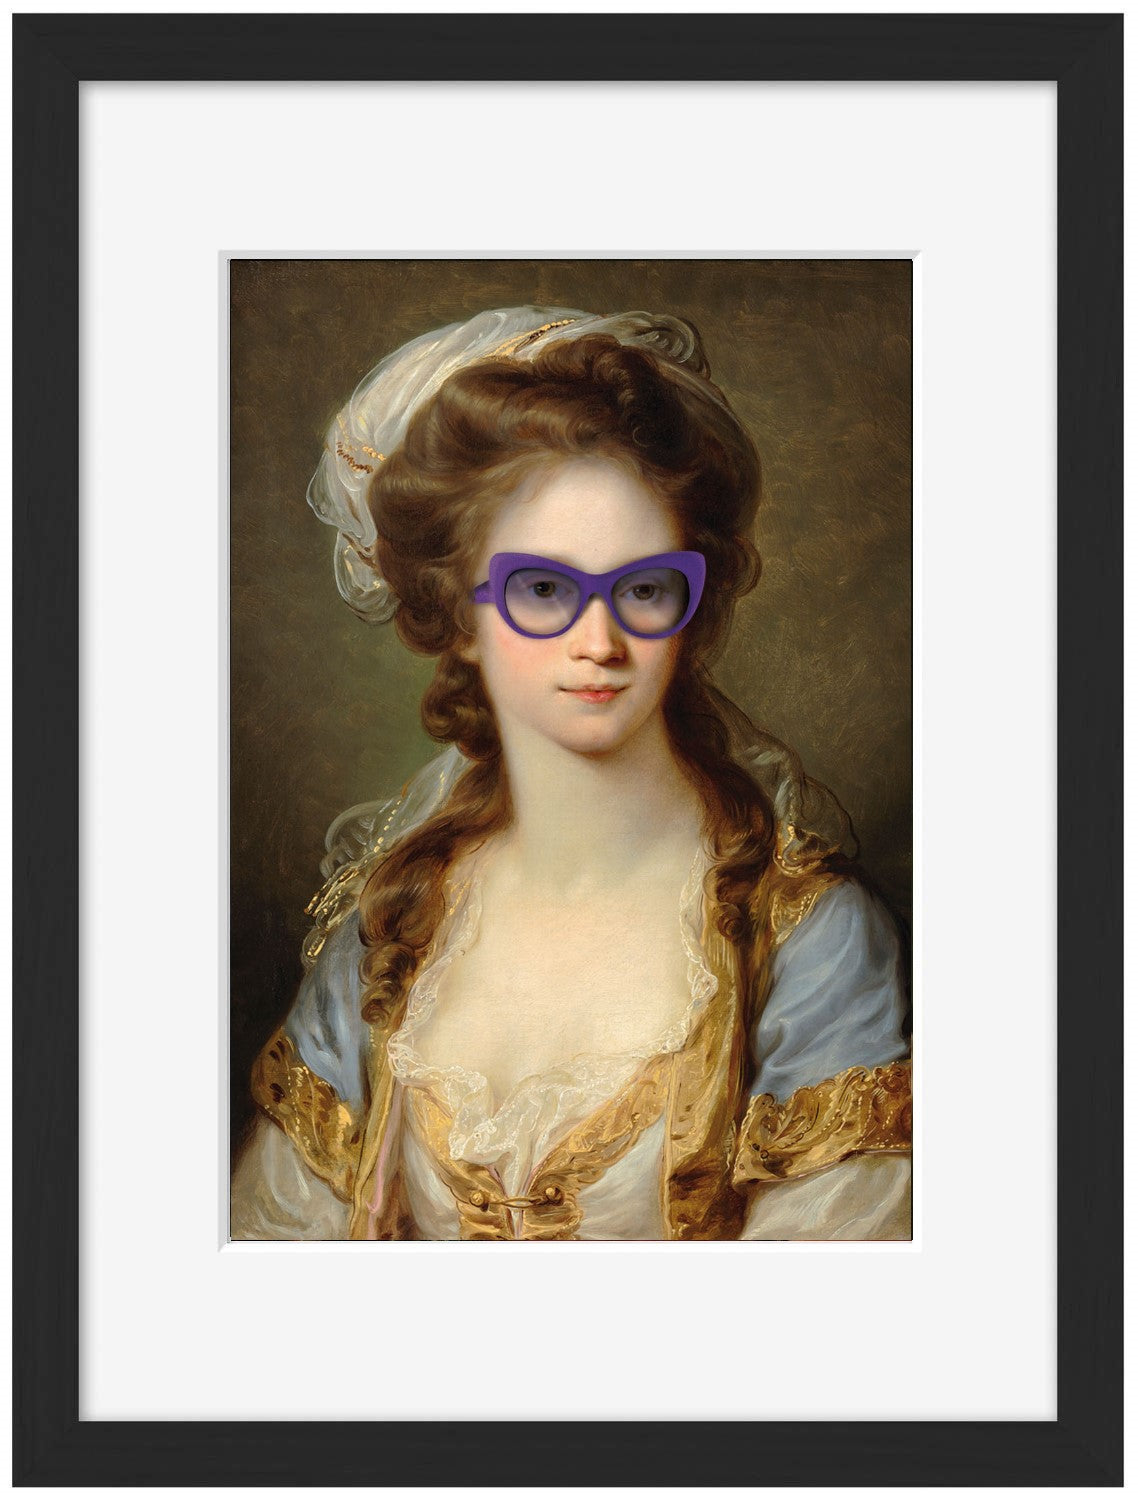 Sunglasses # 3-historical, print-Framed Print-30 x 40 cm-BLUE SHAKER